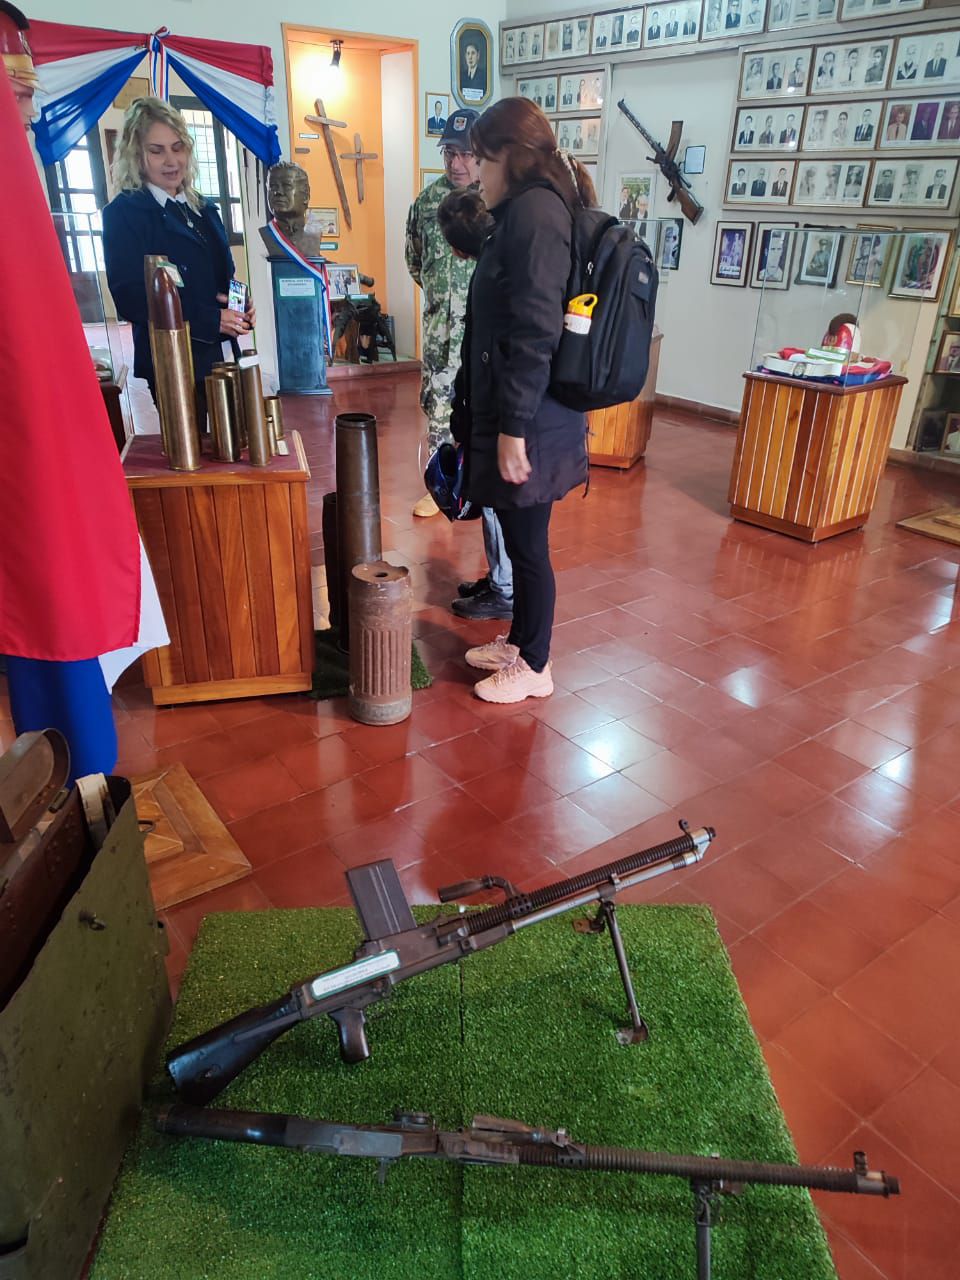 El museo de historia militar “Casa de la Victoria” guarda una colección de armas, utensilios, fotografías, uniformes y banderas de la Guerra del Chaco (1932-1935).